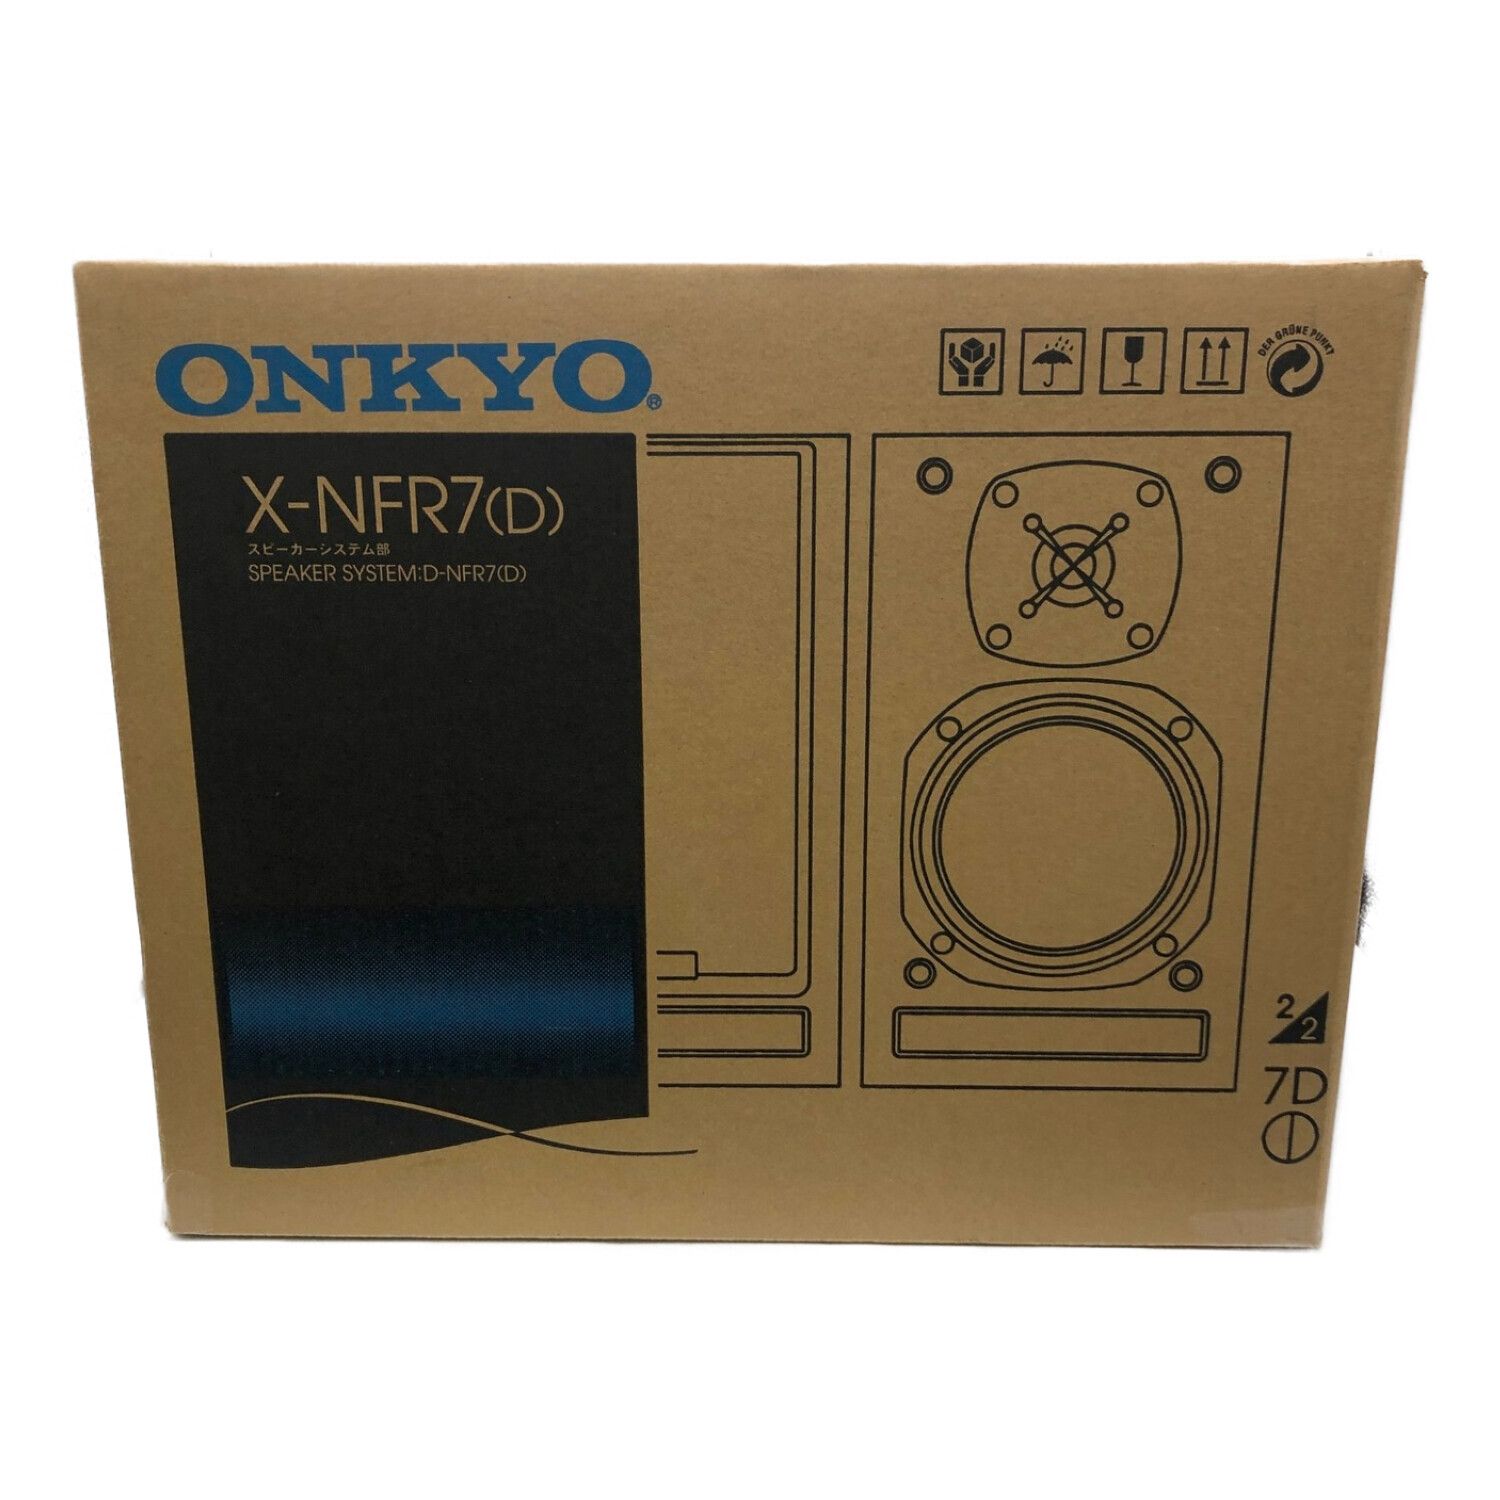 商品説明『 現状品 』ONKYO X-NFR7FX(D) スピーカーシステム部